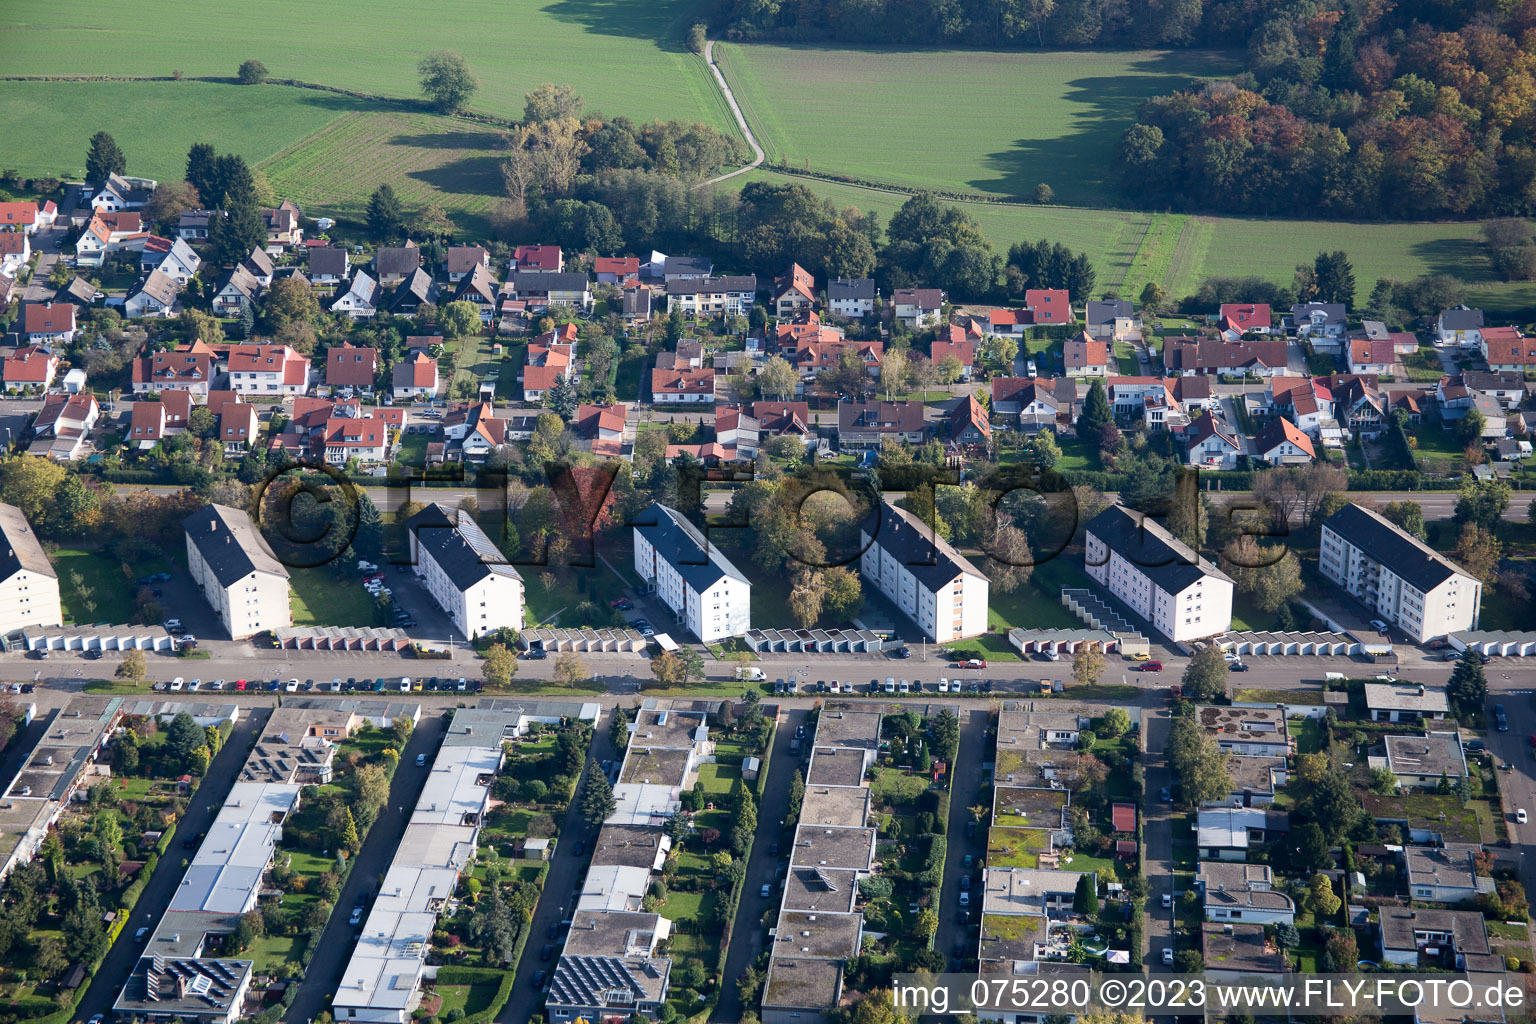 Aerial view of Neckarstr in Rastatt in the state Baden-Wuerttemberg, Germany